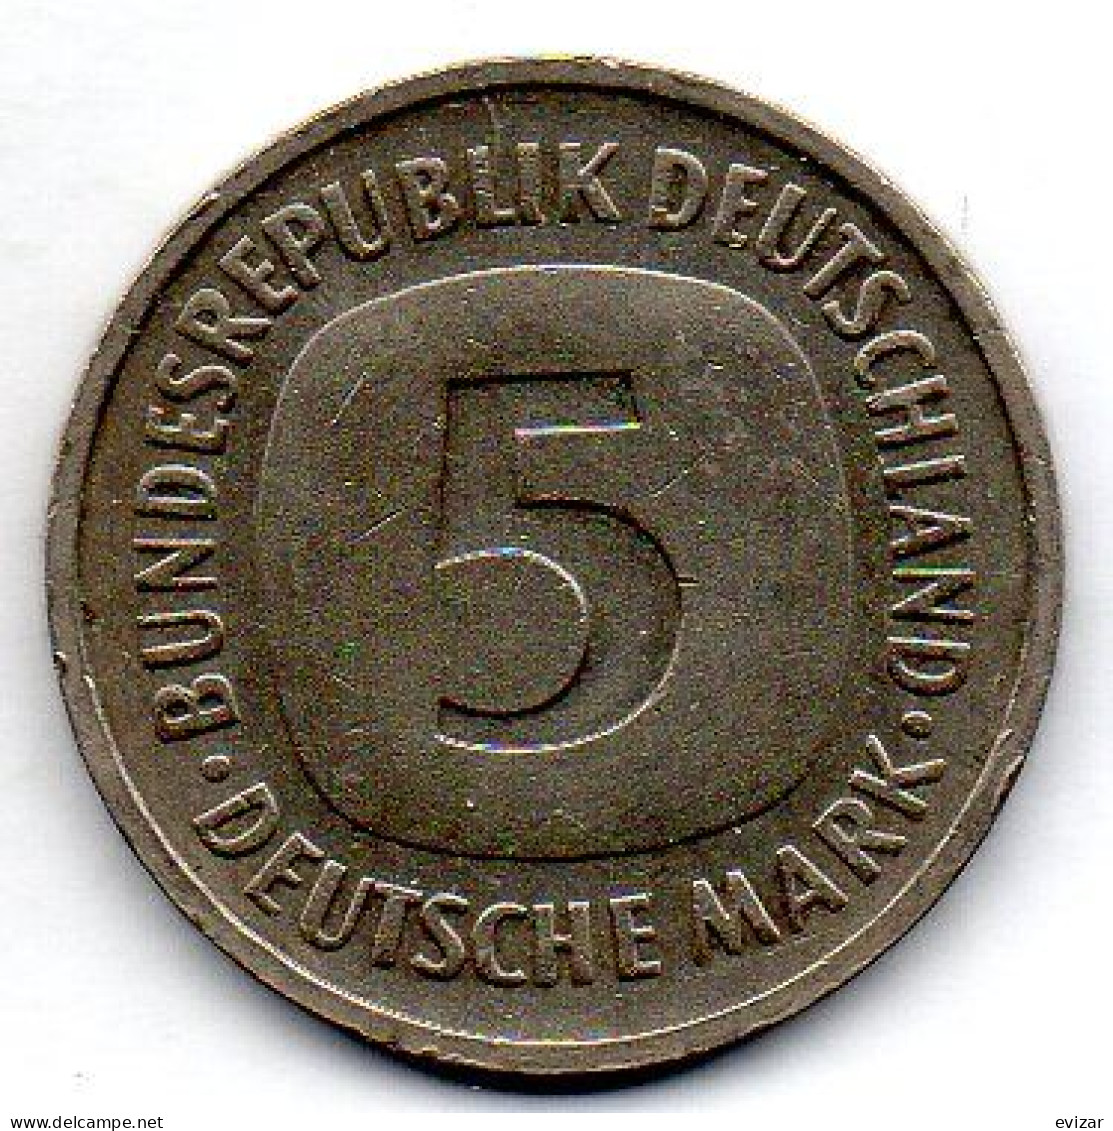 GERMANY - FEDERAL REPUBLIC, 5 Mark, Copper-Nickel, Year 1993-J, KM # 140.1 - 5 Mark